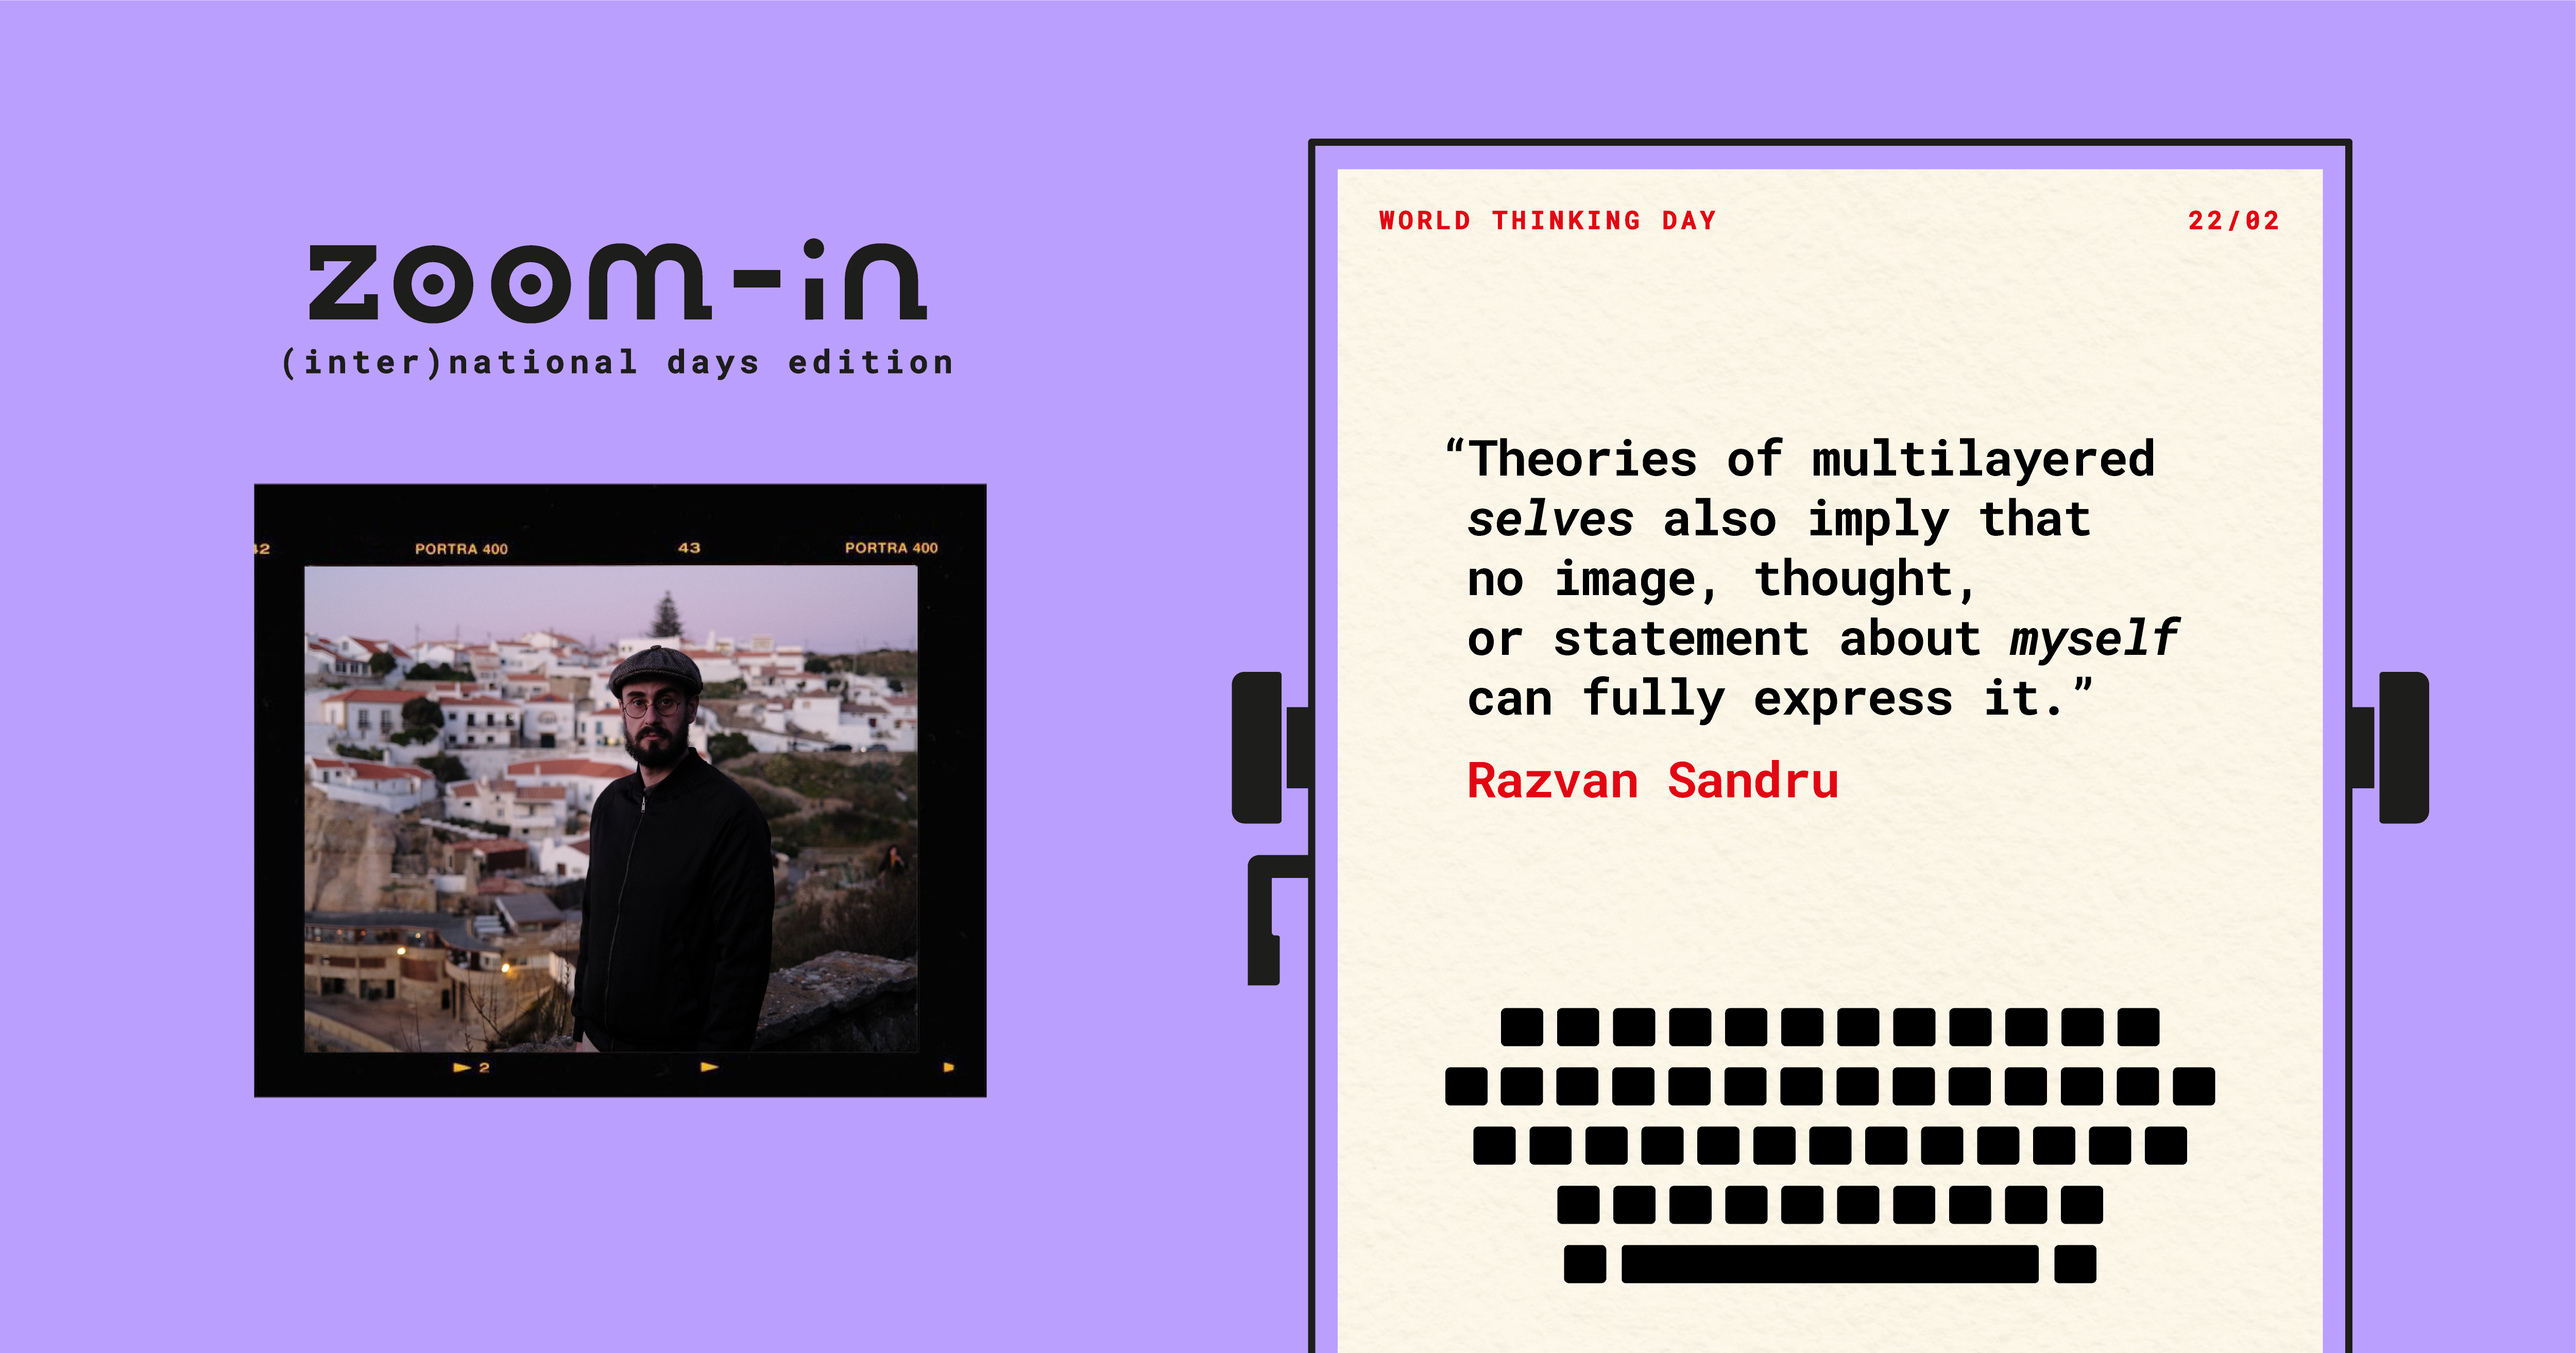 Razvan Sandru on World Thinking Day